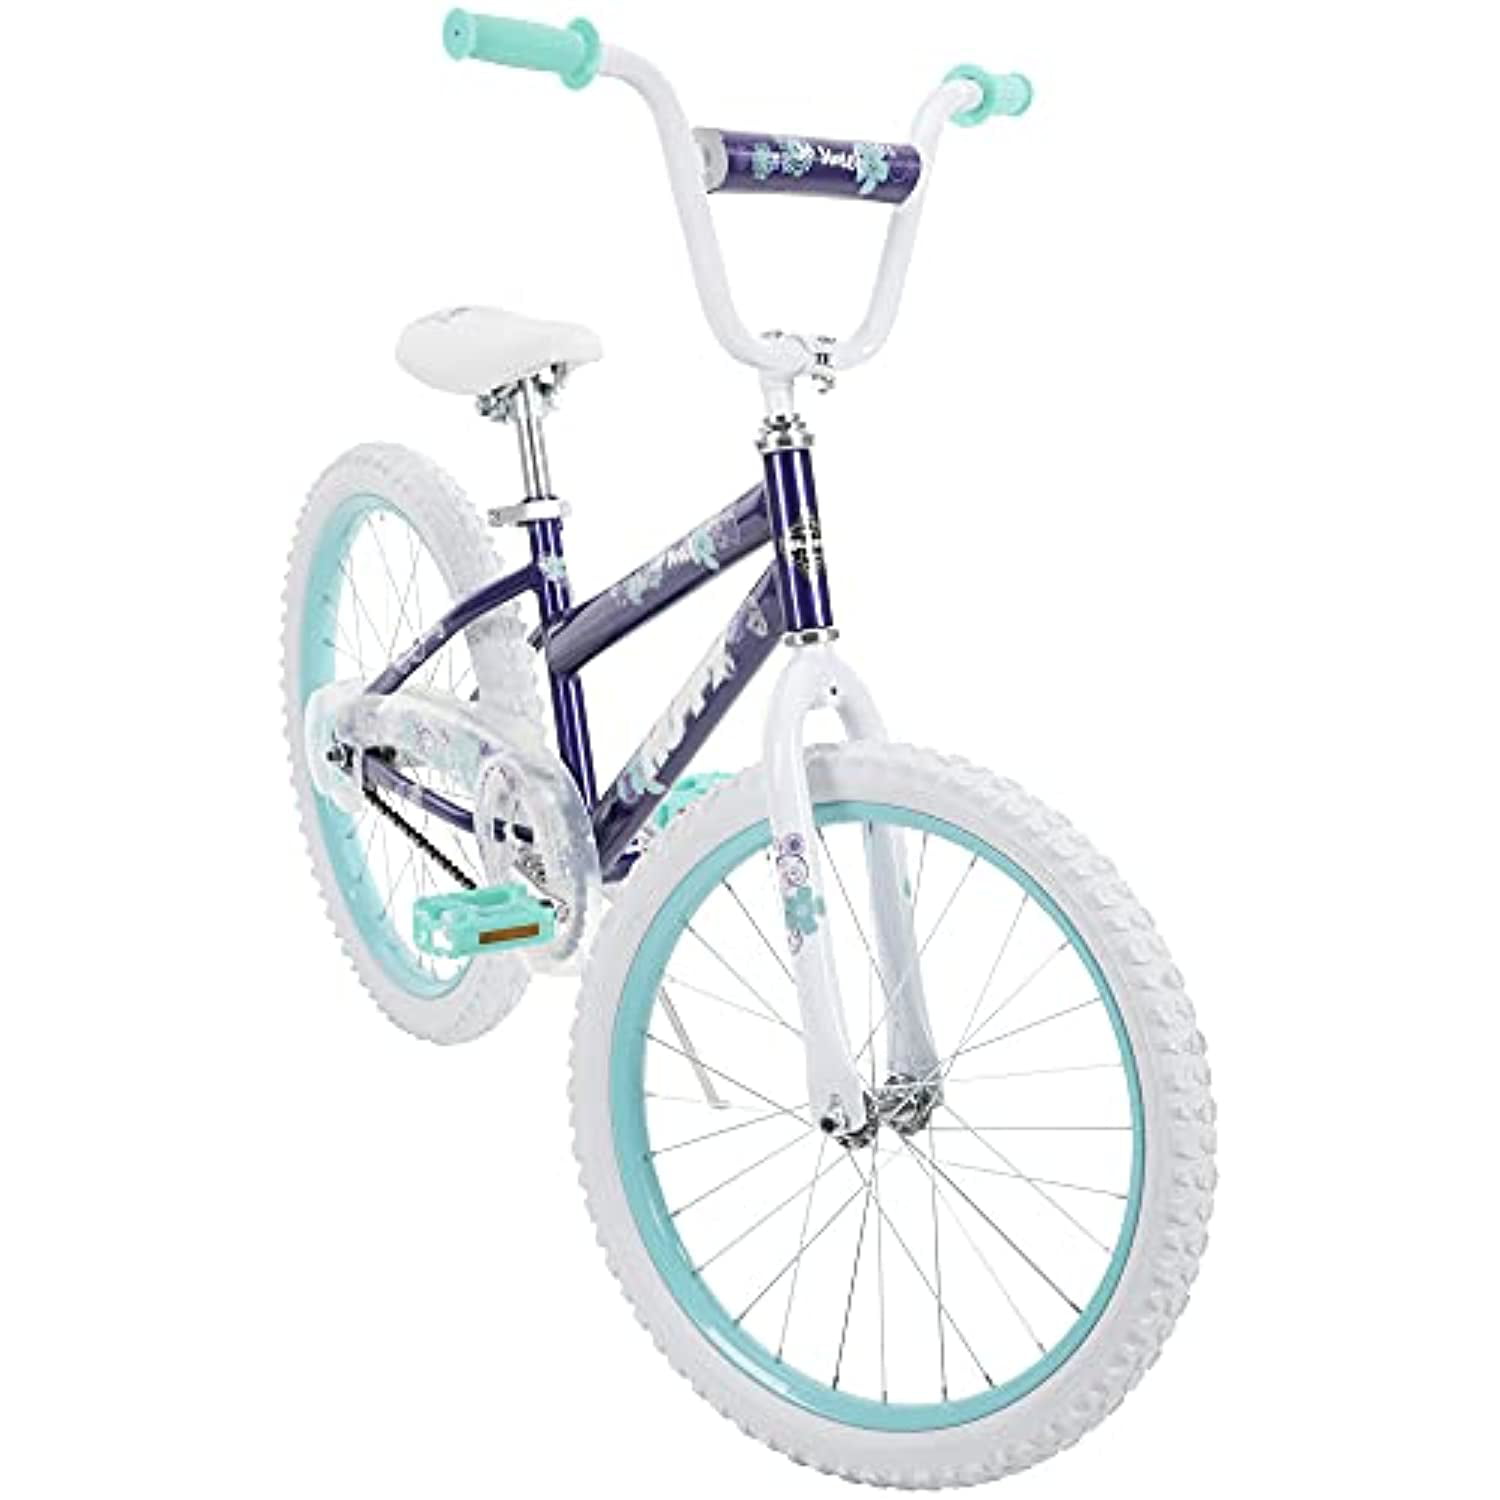 Huffy 20 in. So Sweet Kids Bike, Purple - One Size